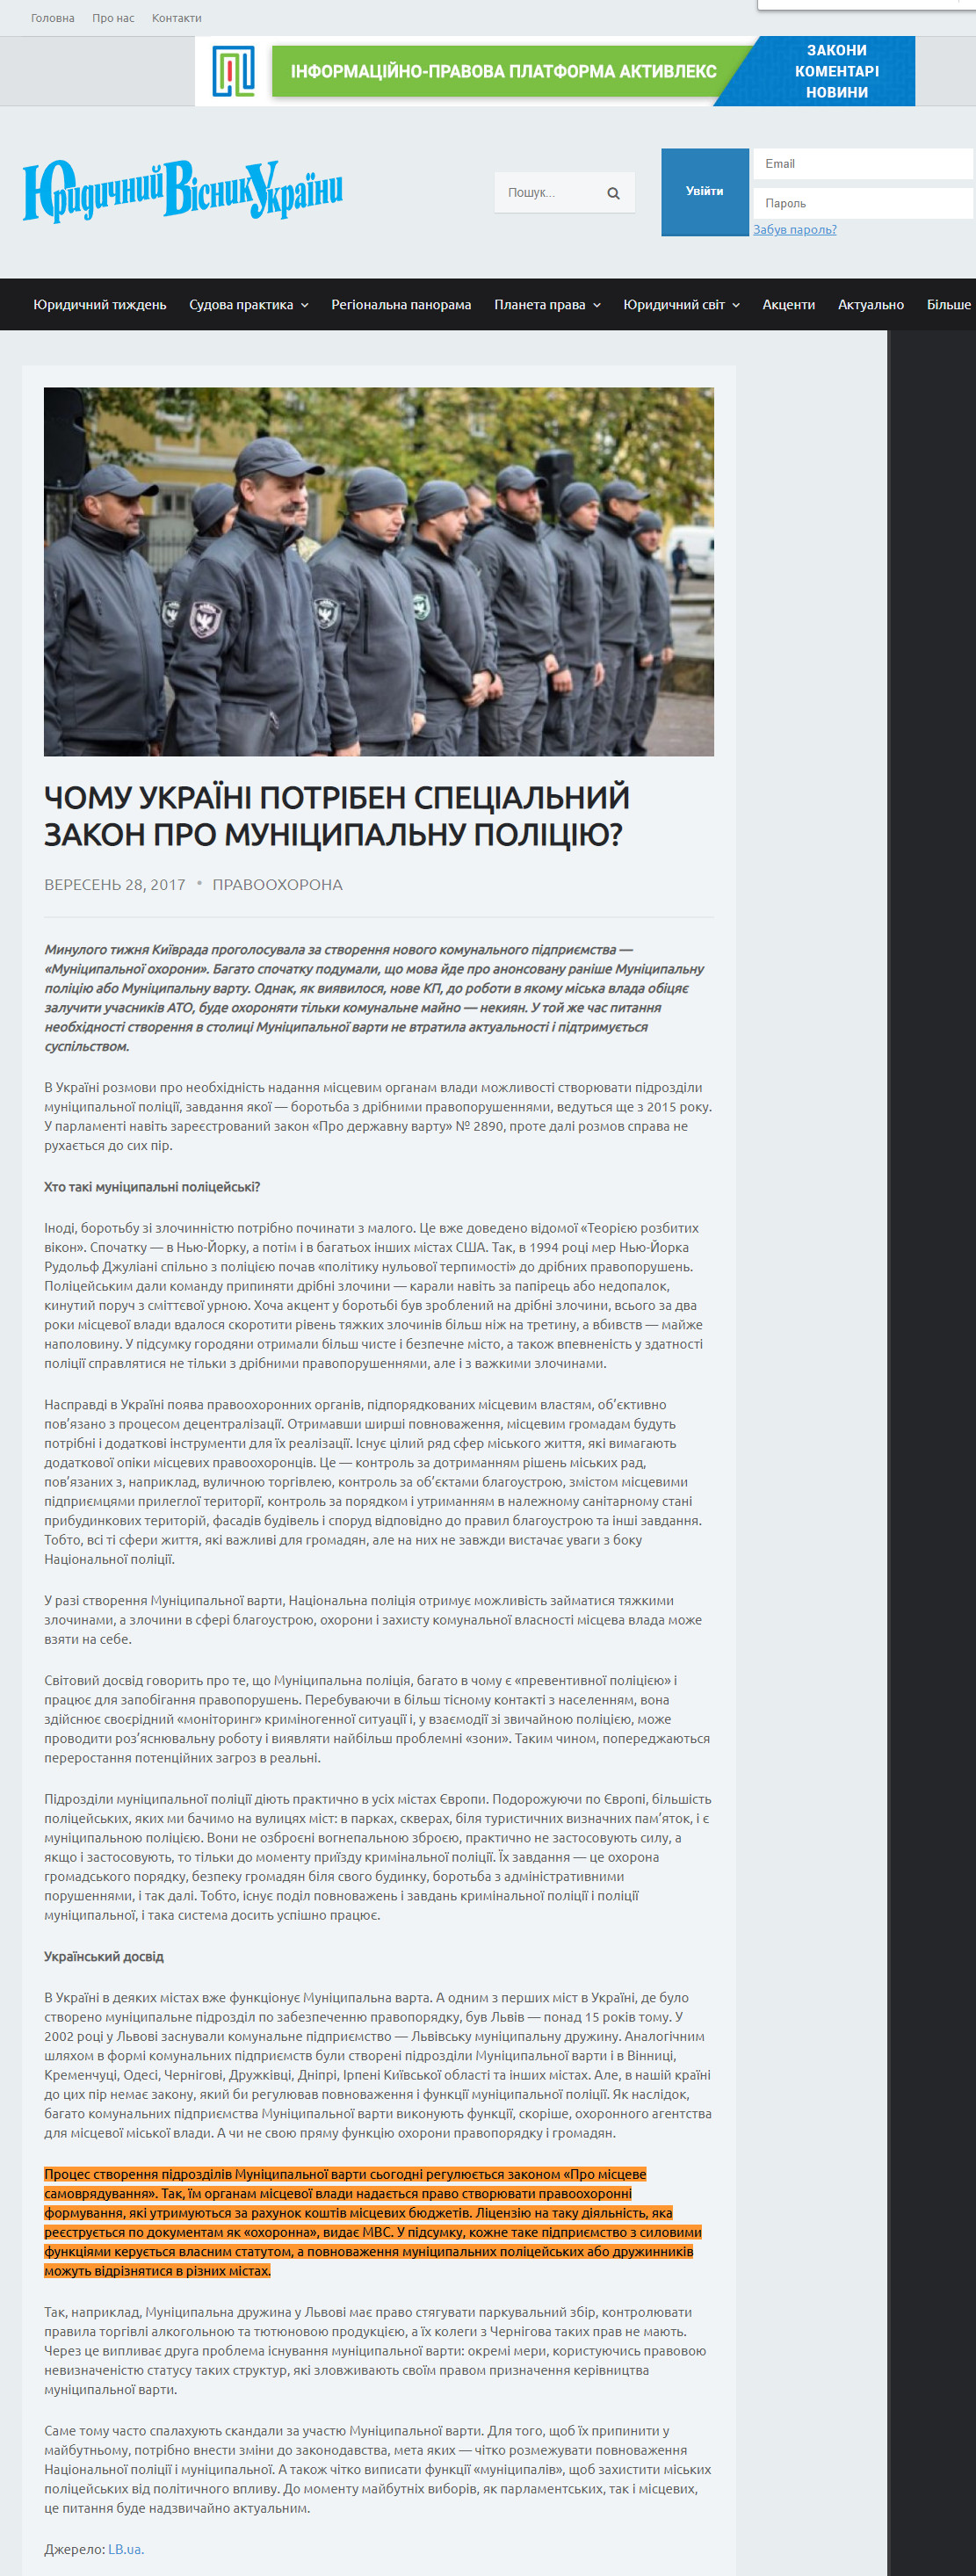 https://yvu.com.ua/chomu-ukrayini-potriben-spetsialnyj-zakon-pro-munitsypalnu-politsiyu/